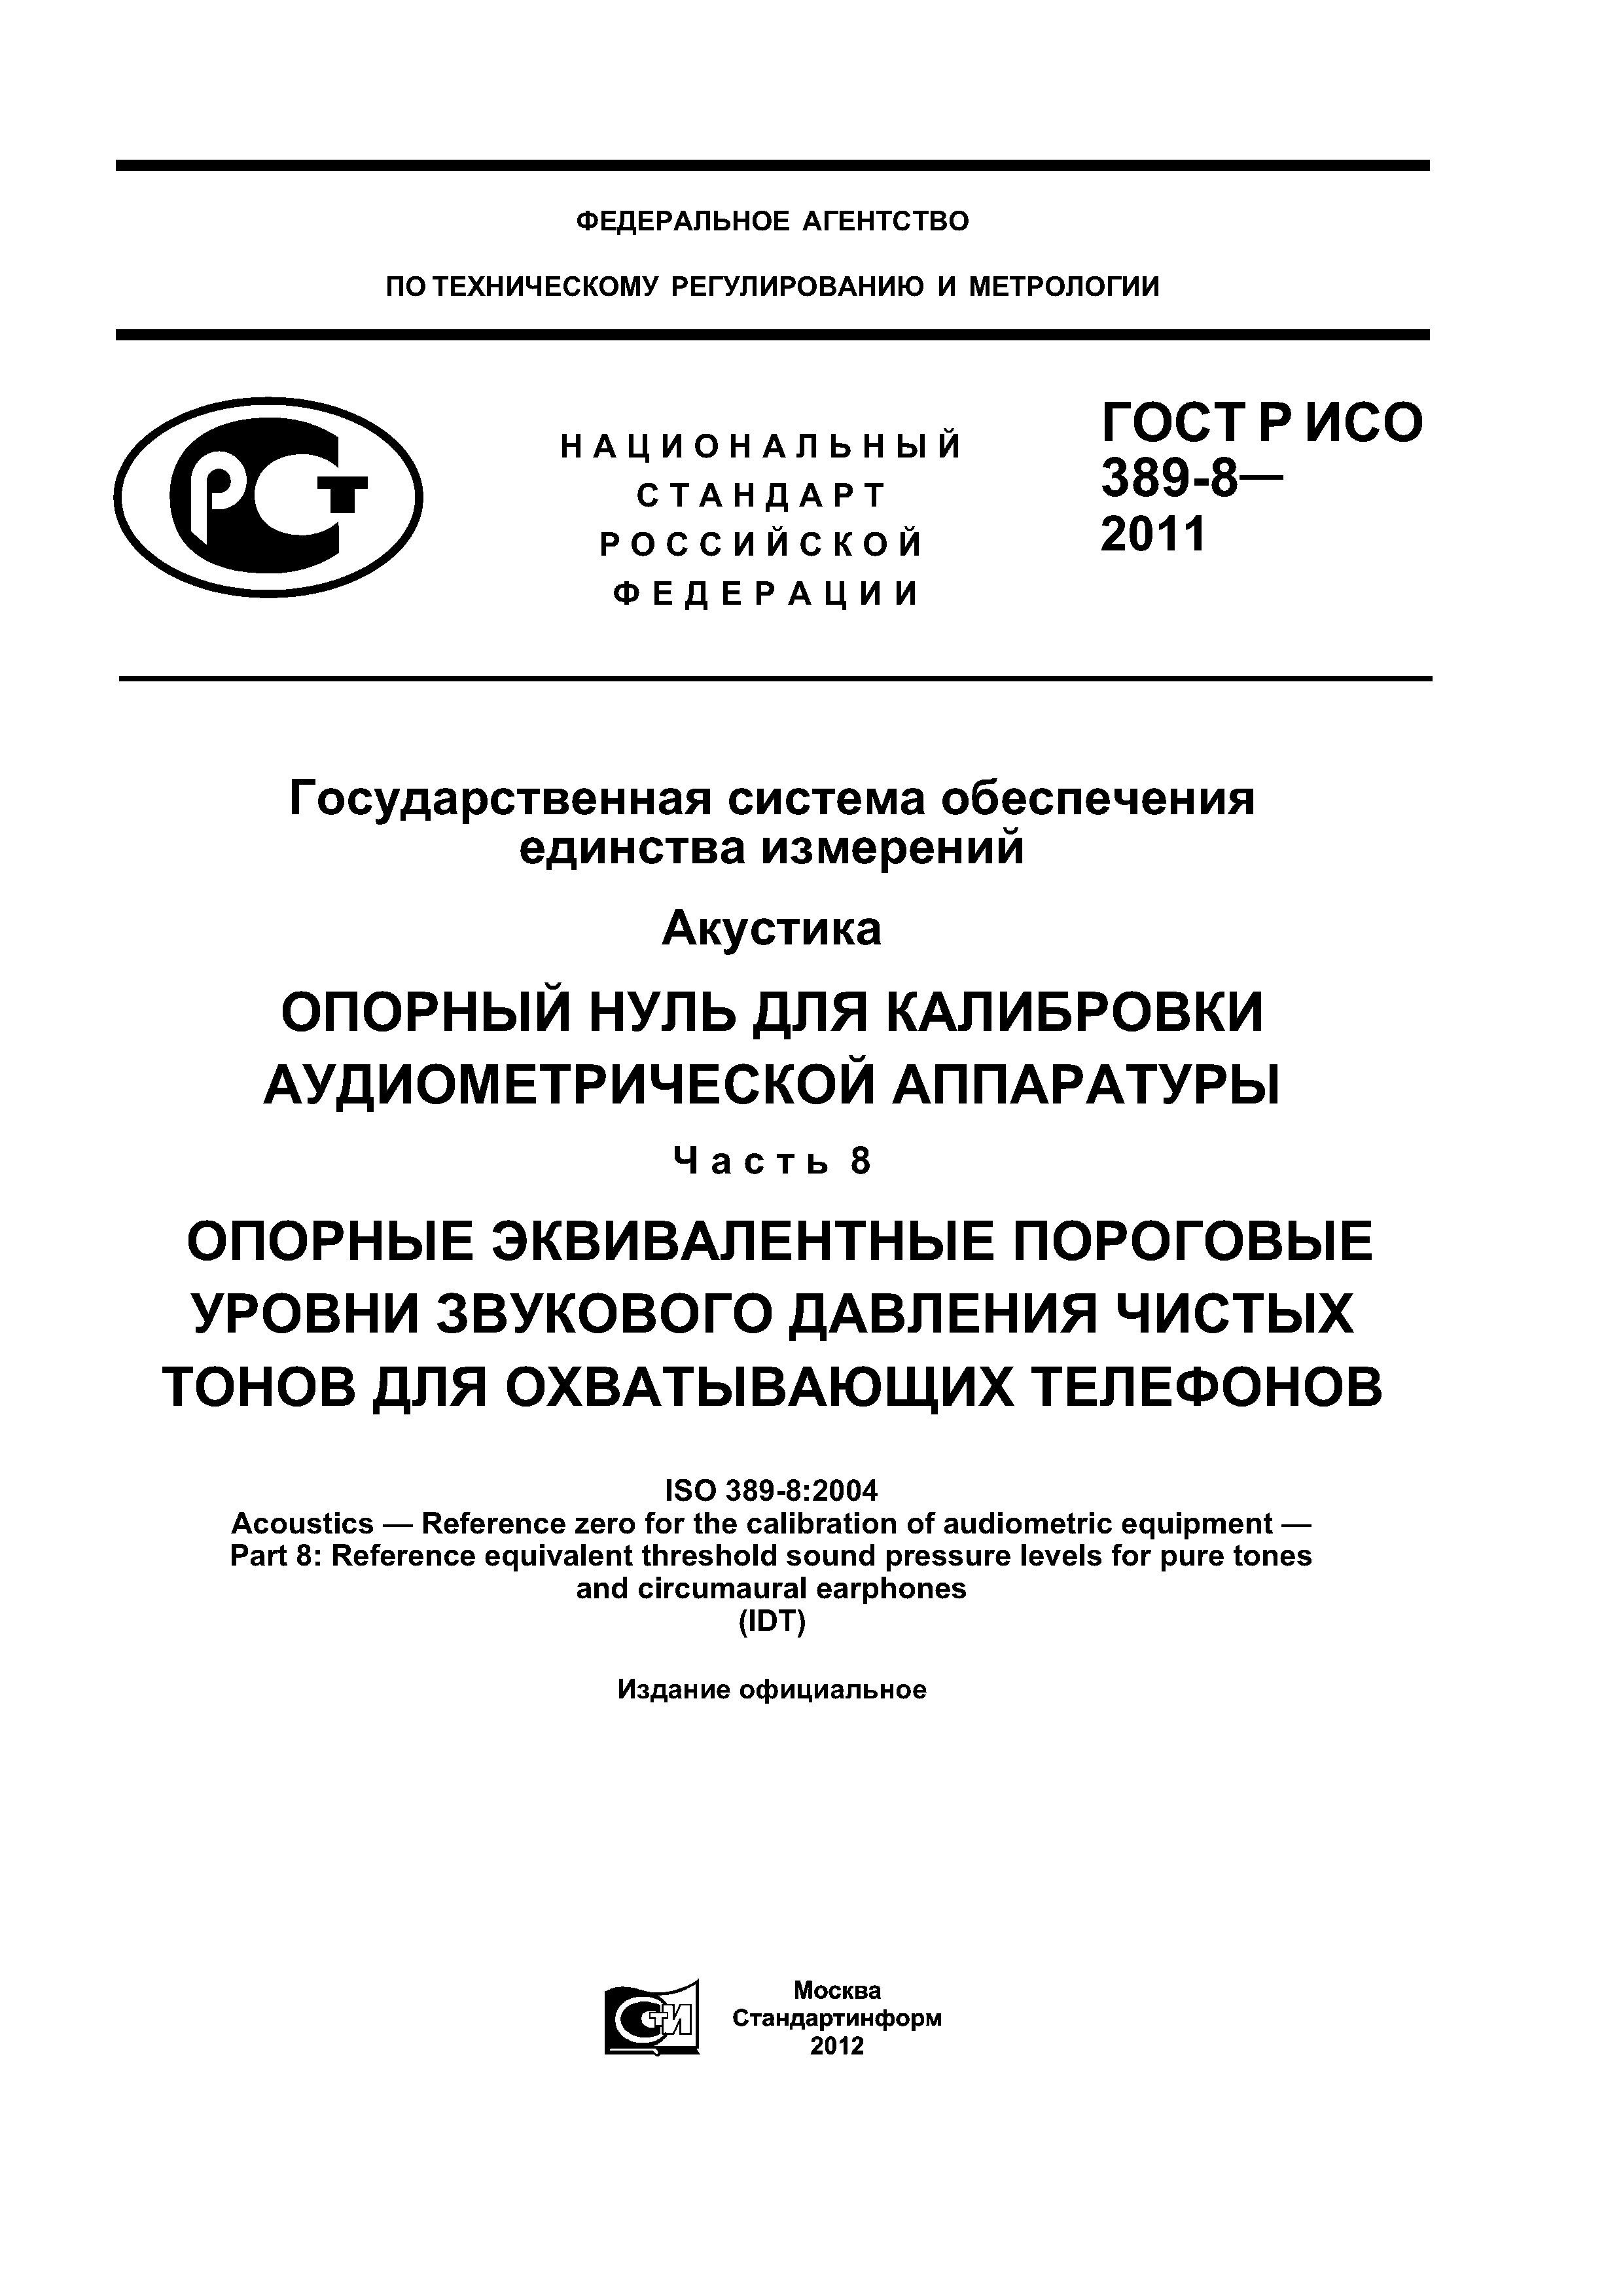 ГОСТ Р ИСО 389-8-2011